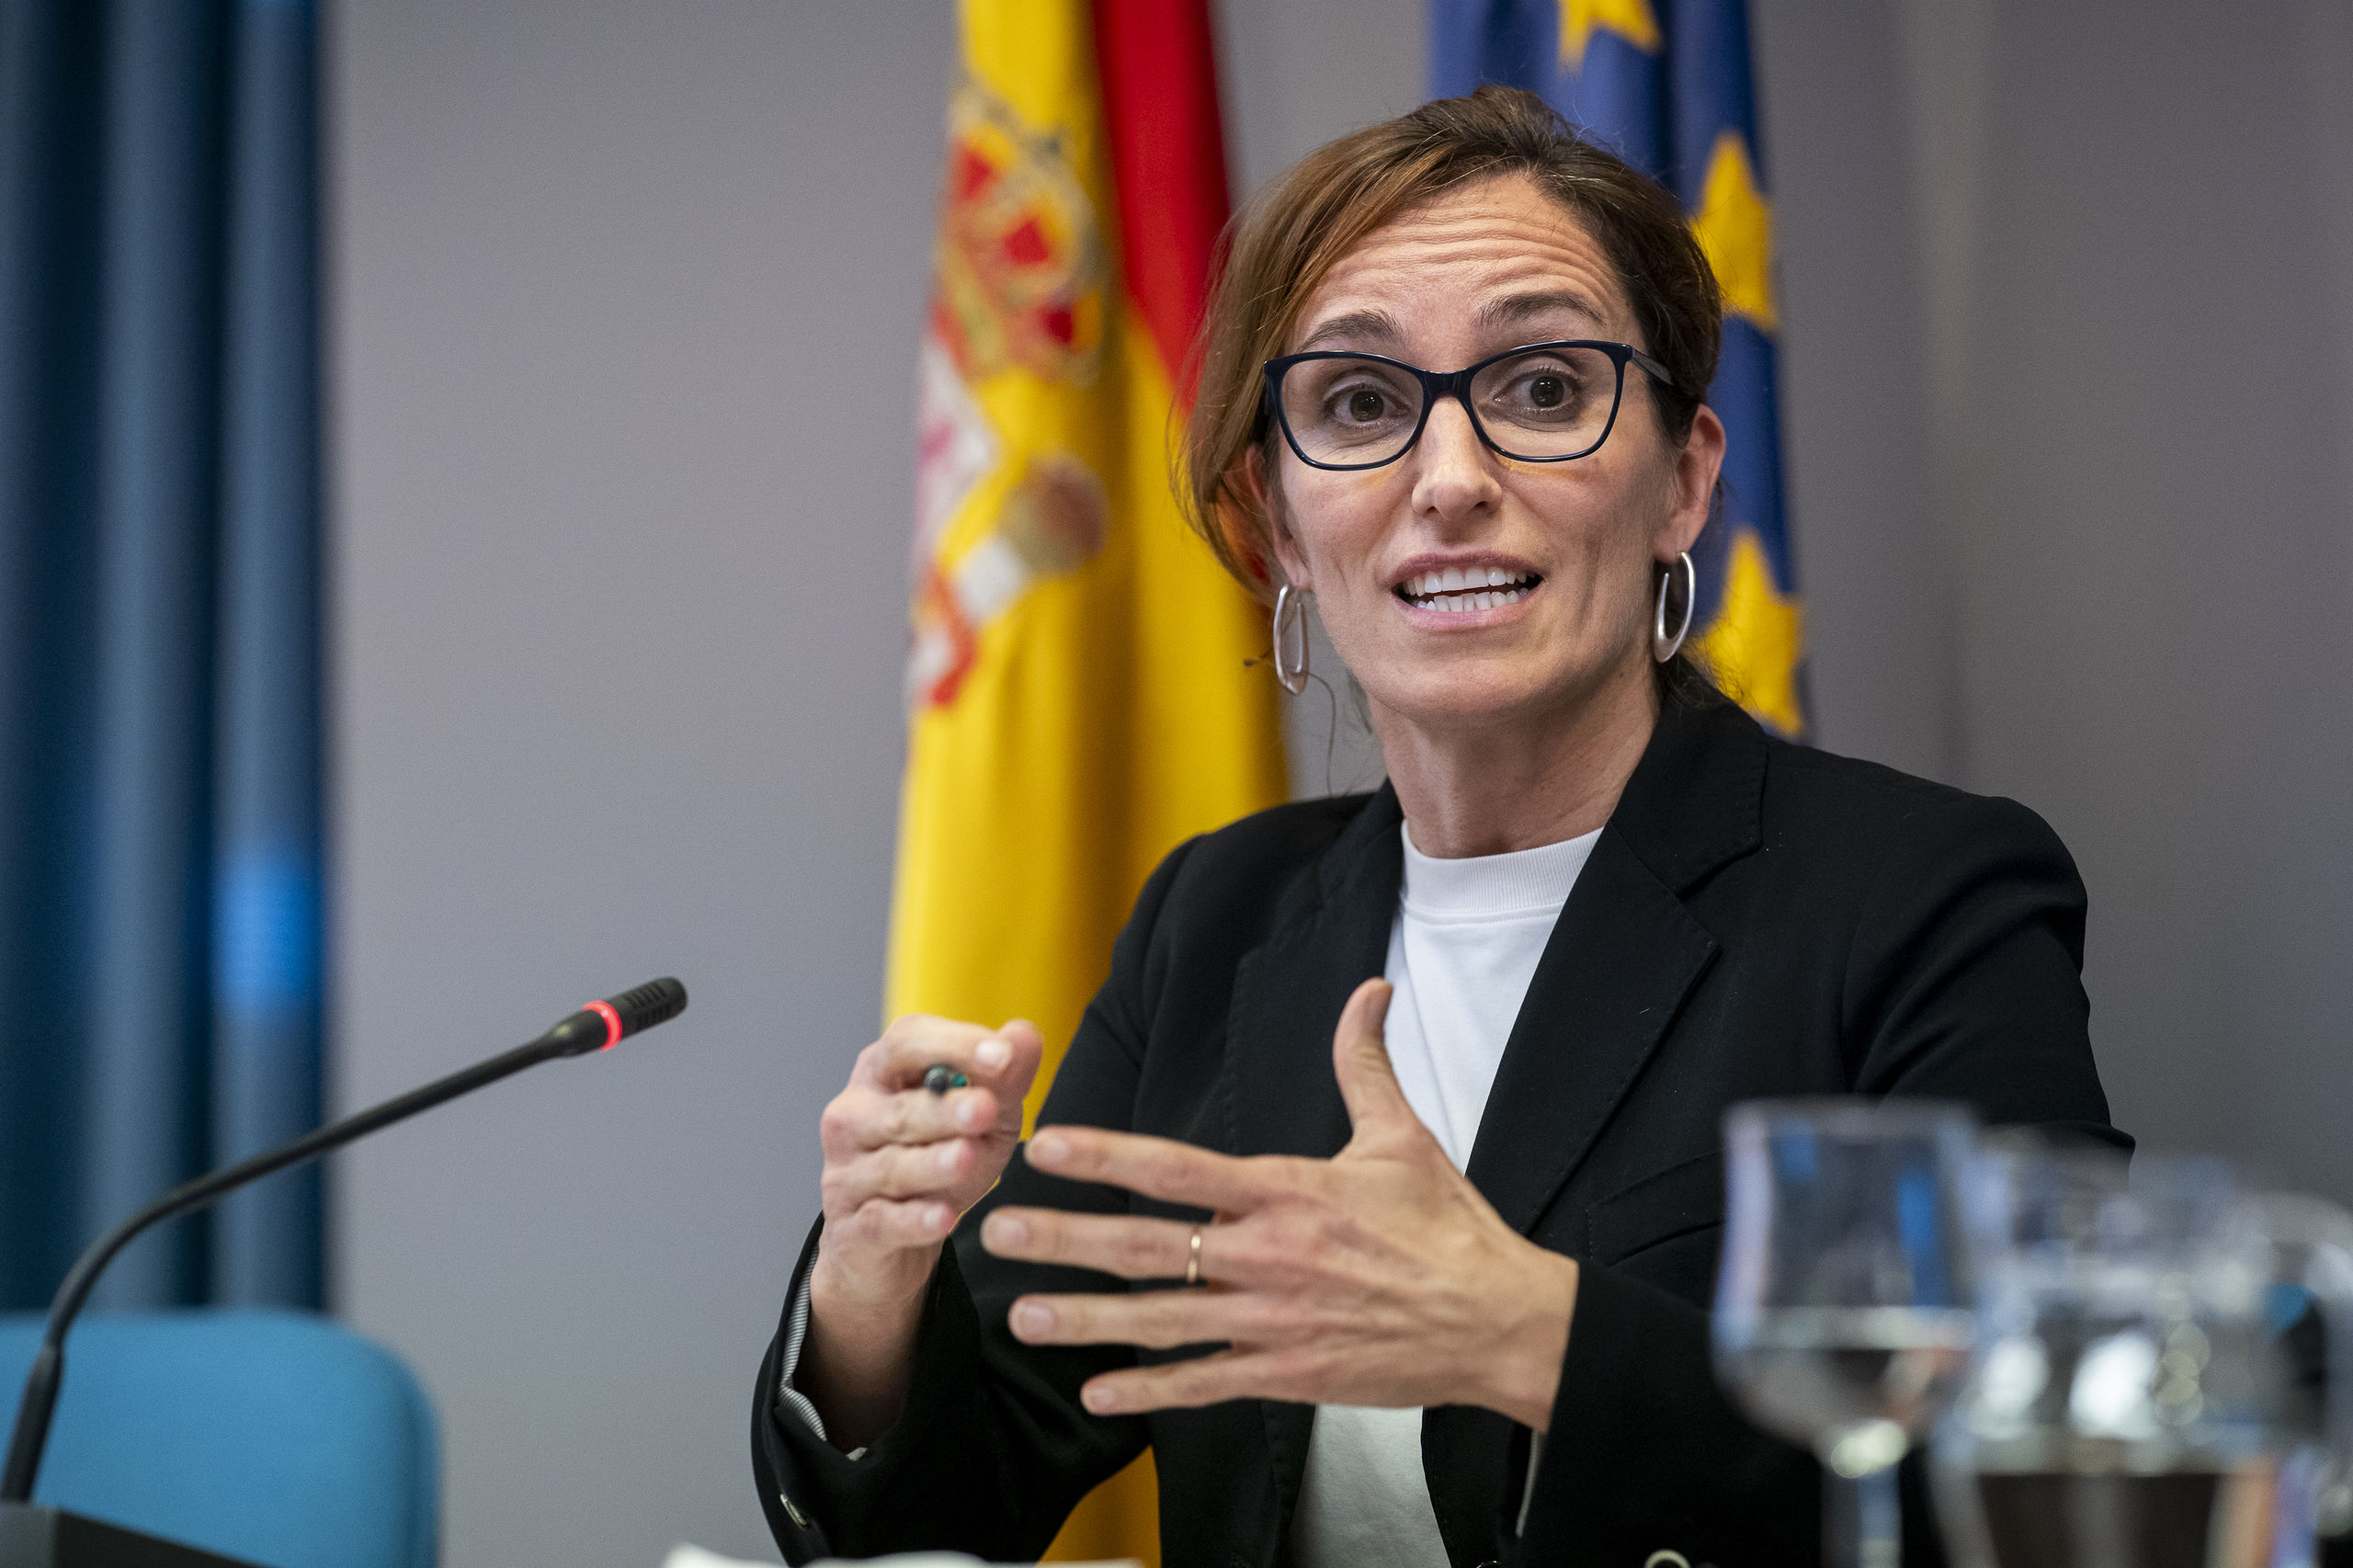 Mónica García busca casa en Madrid tras su discreto divorcio